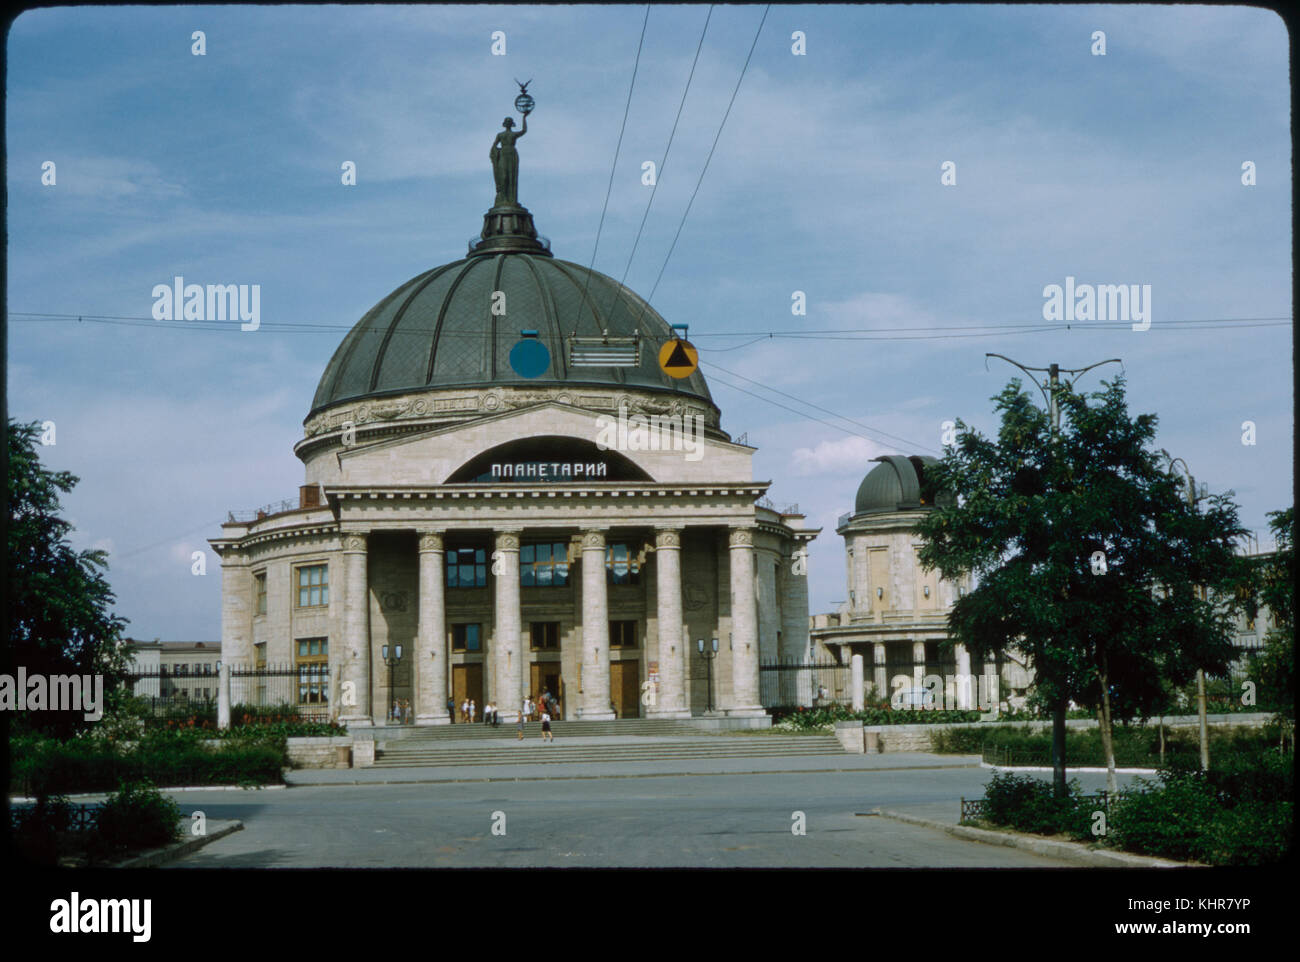 Planetarium, Stalingrad (Volgograd), U.S.S.R., 1958 Stock Photo